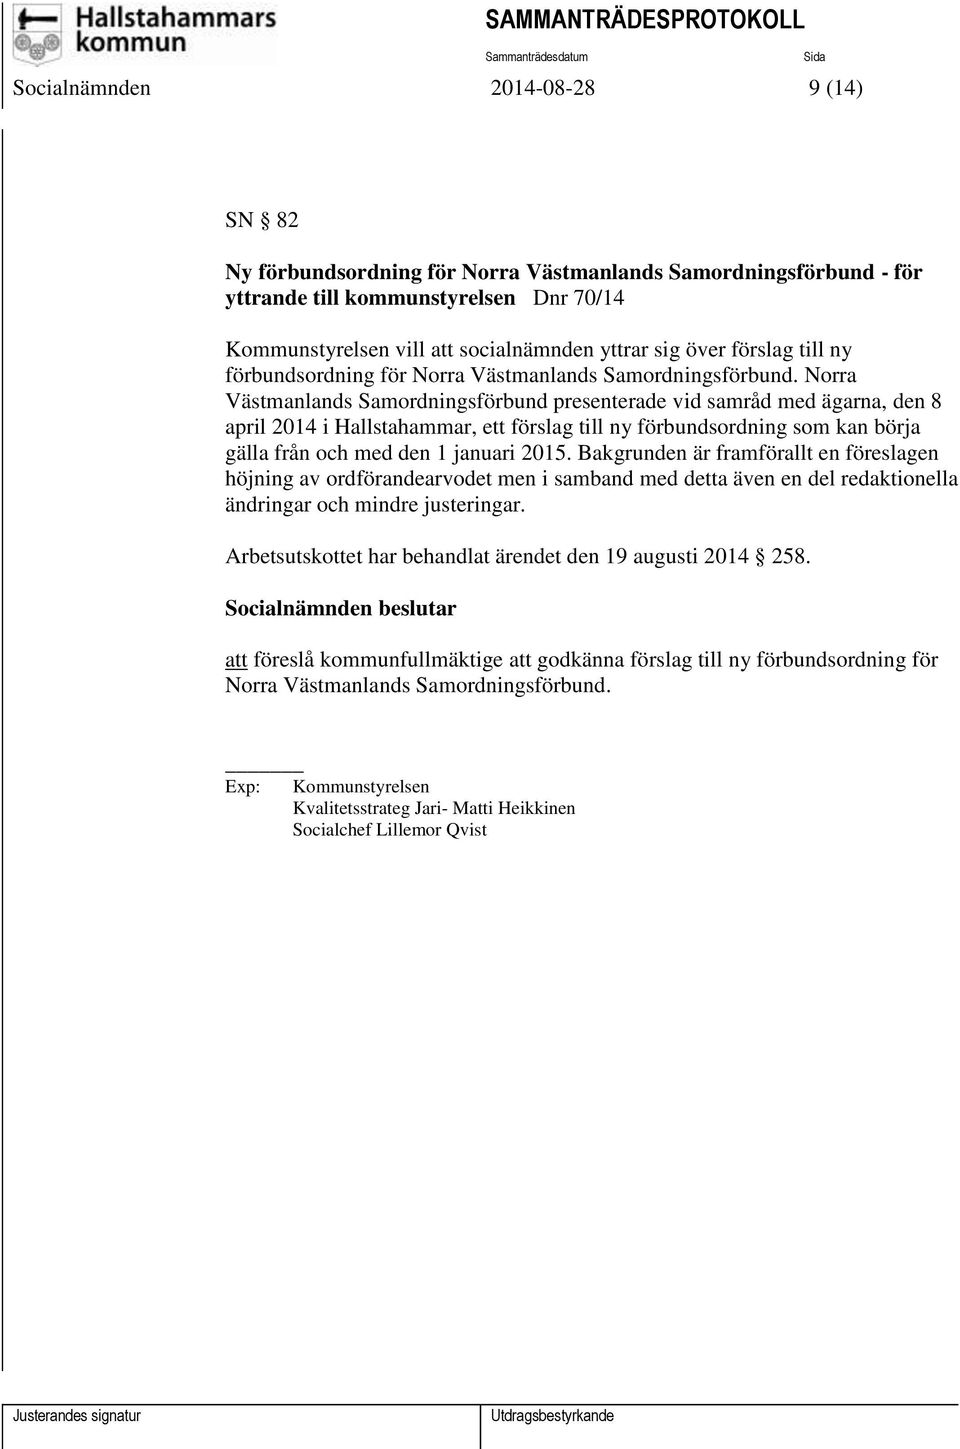 Norra Västmanlands Samordningsförbund presenterade vid samråd med ägarna, den 8 april 2014 i Hallstahammar, ett förslag till ny förbundsordning som kan börja gälla från och med den 1 januari 2015.